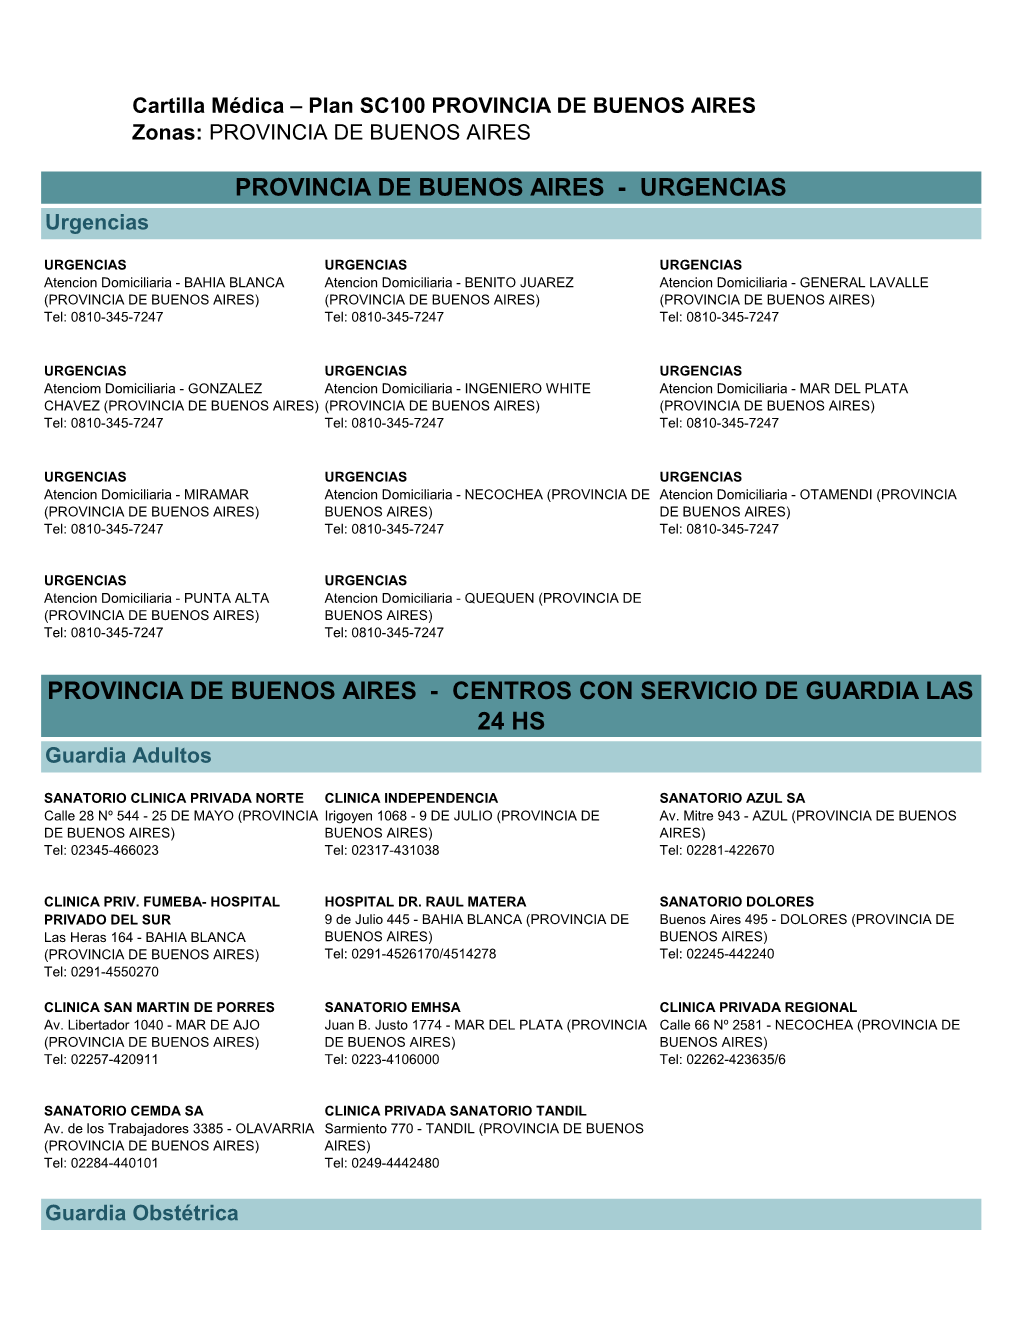 PROVINCIA DE BUENOS AIRES Zonas: PROVINCIA DE BUENOS AIRES